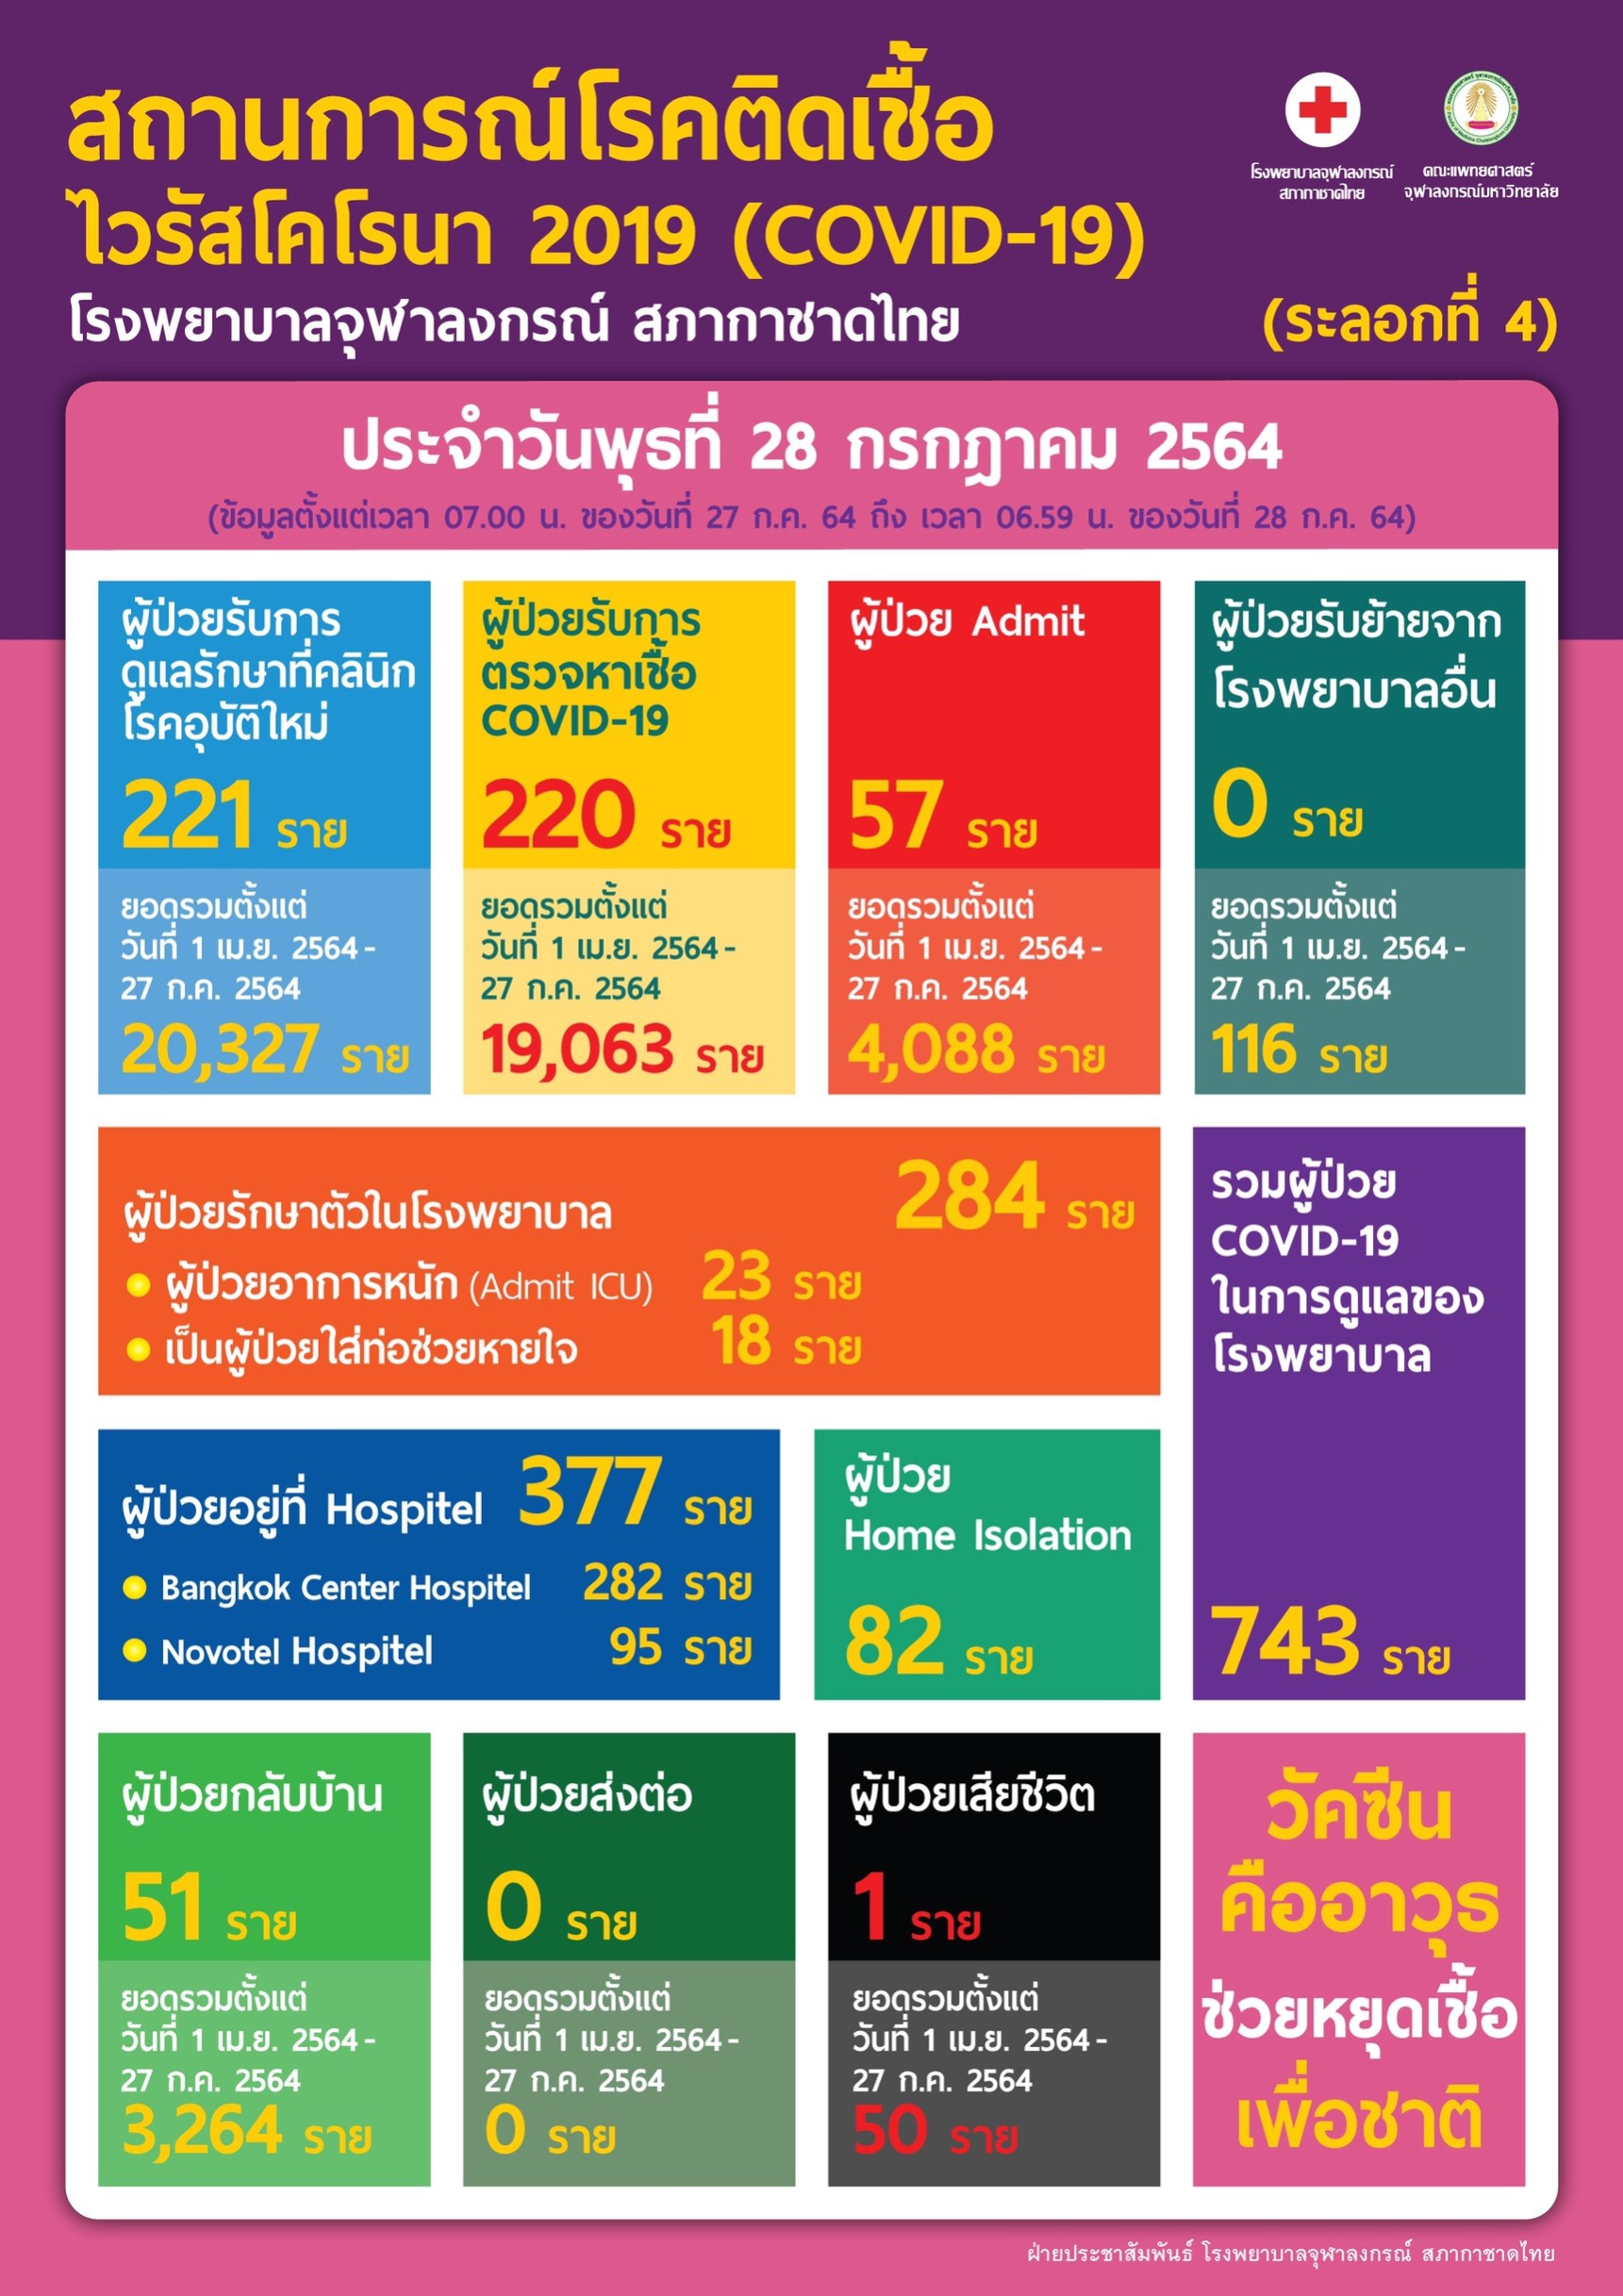 สถานการณ์โรคติดเชื้อไวรัสโคโรนา 2019 (COVID-19)(ระลอกที่ 4) โรงพยาบาลจุฬาลงกรณ์ สภากาชาดไทย ประจำวันพุธที่ 28 กรกฎาคม 2564